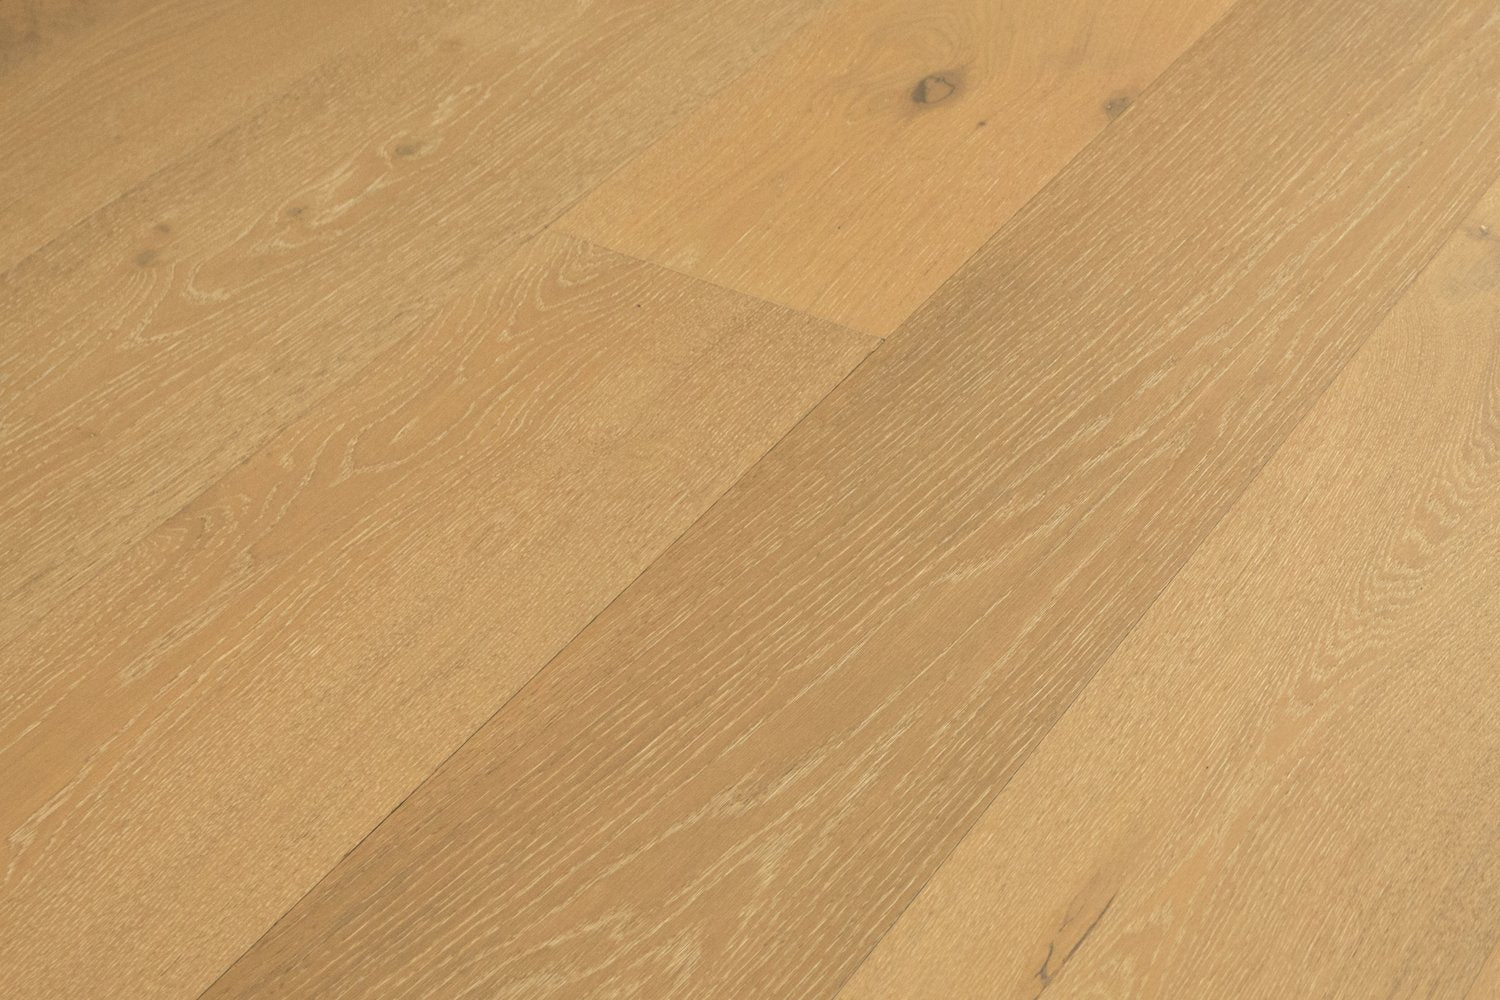 surface group artisan en bois brittany ritz cove white oak engineered hardwood flooring plank angled.jpg